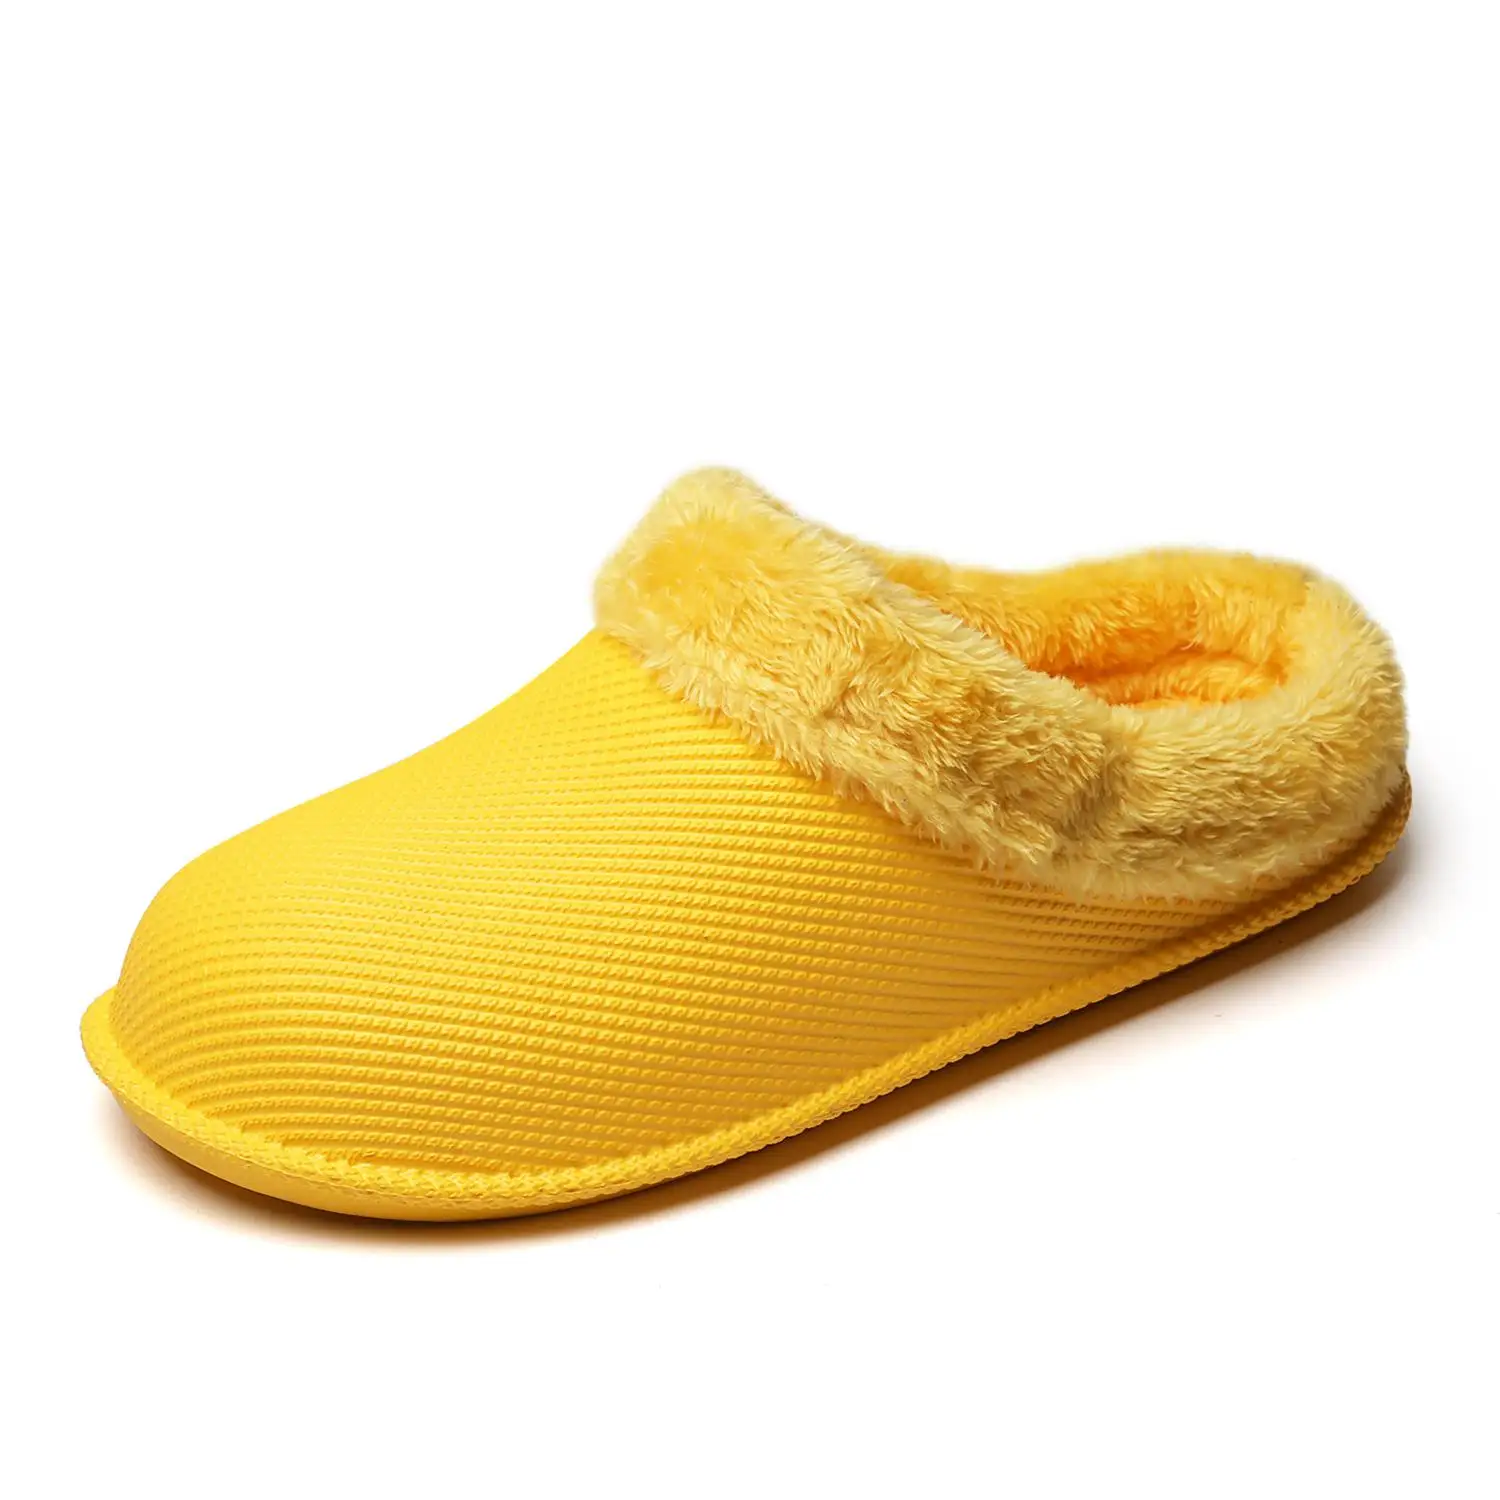 Cajacky зимние Для мужчин тапочки плюшевые теплые тапочки Водонепроницаемый зимняя обувь Домашние тапки большой Размеры; большие размеры 36-47 пара шлепанцы обувь - Цвет: yellow